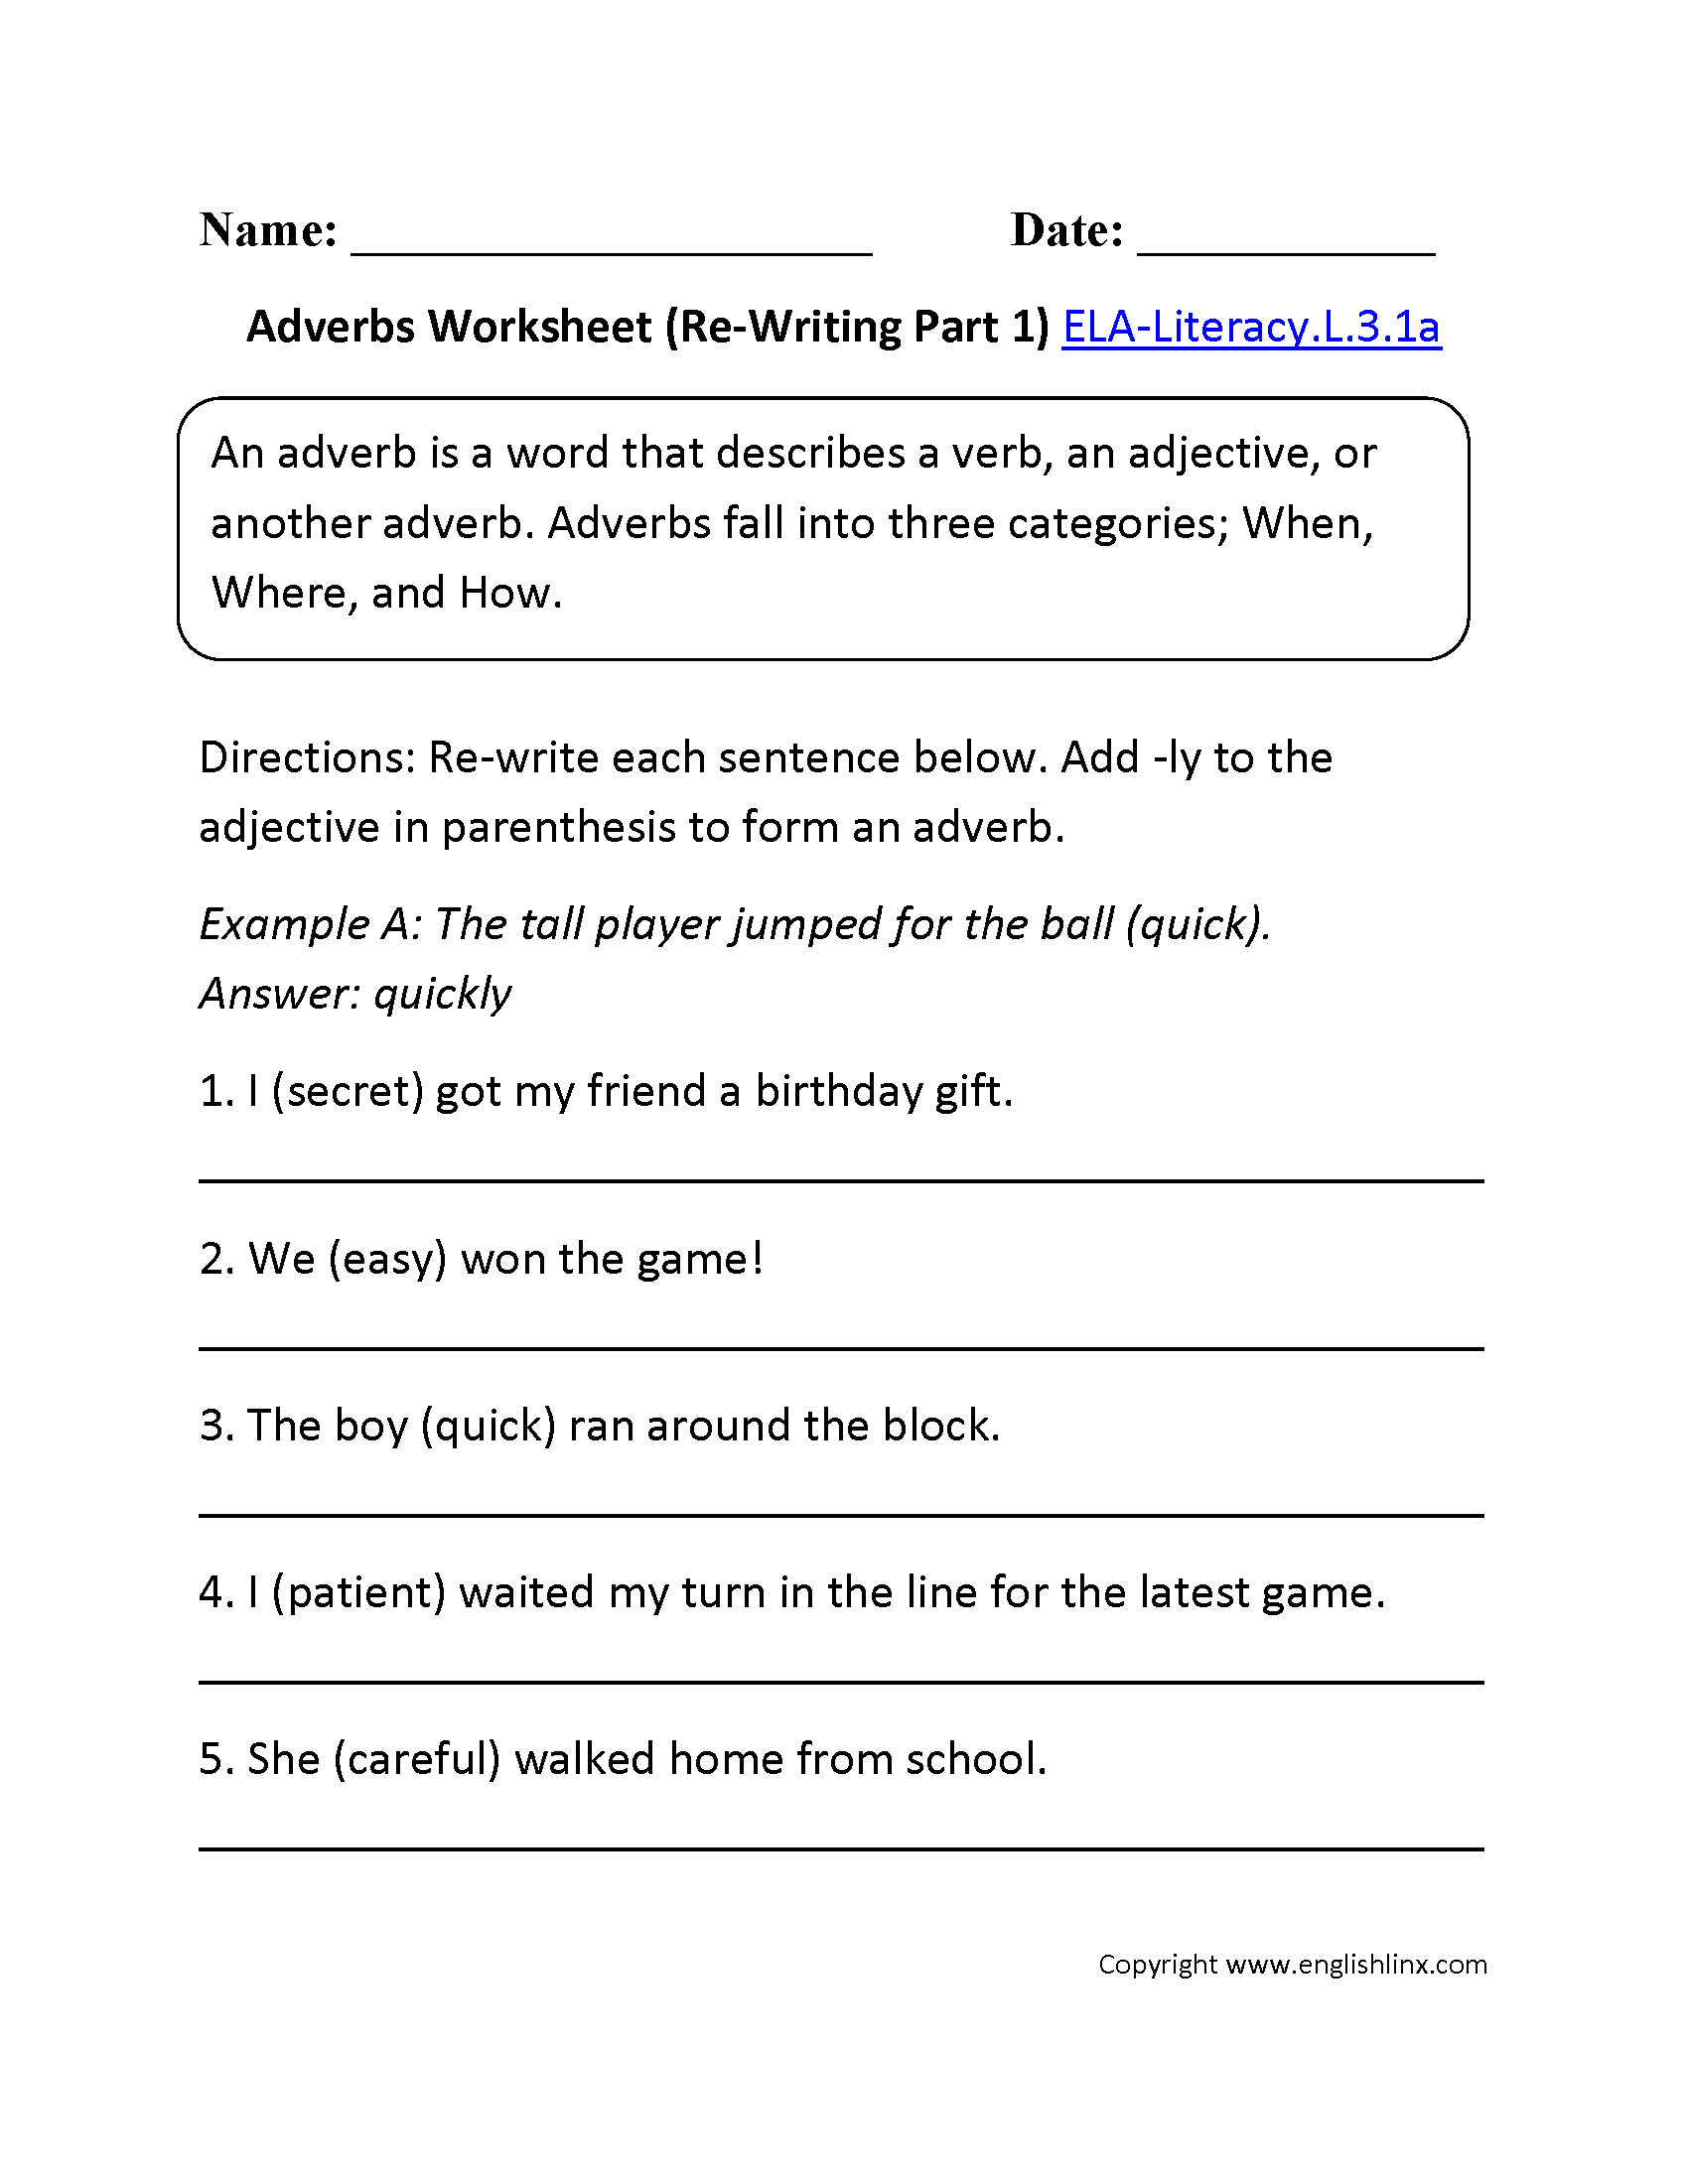 Adverbs Worksheet Pdf